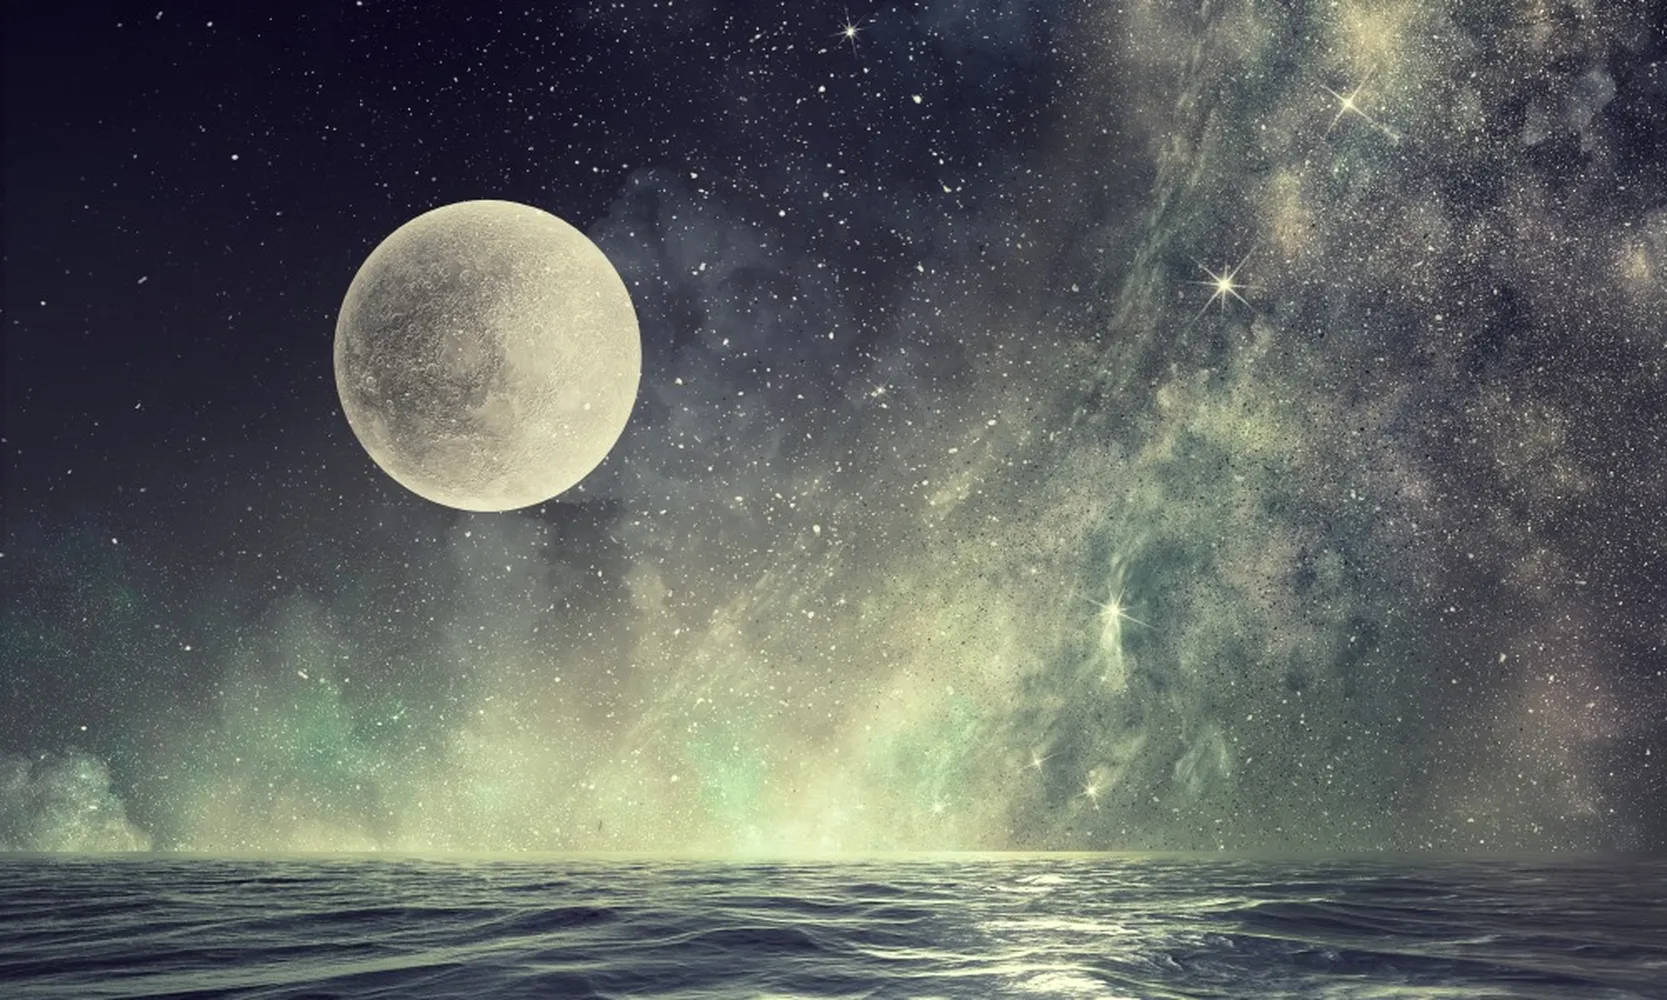 پوستر سه بعدی طرح ماه کامل آسمان پرستاره